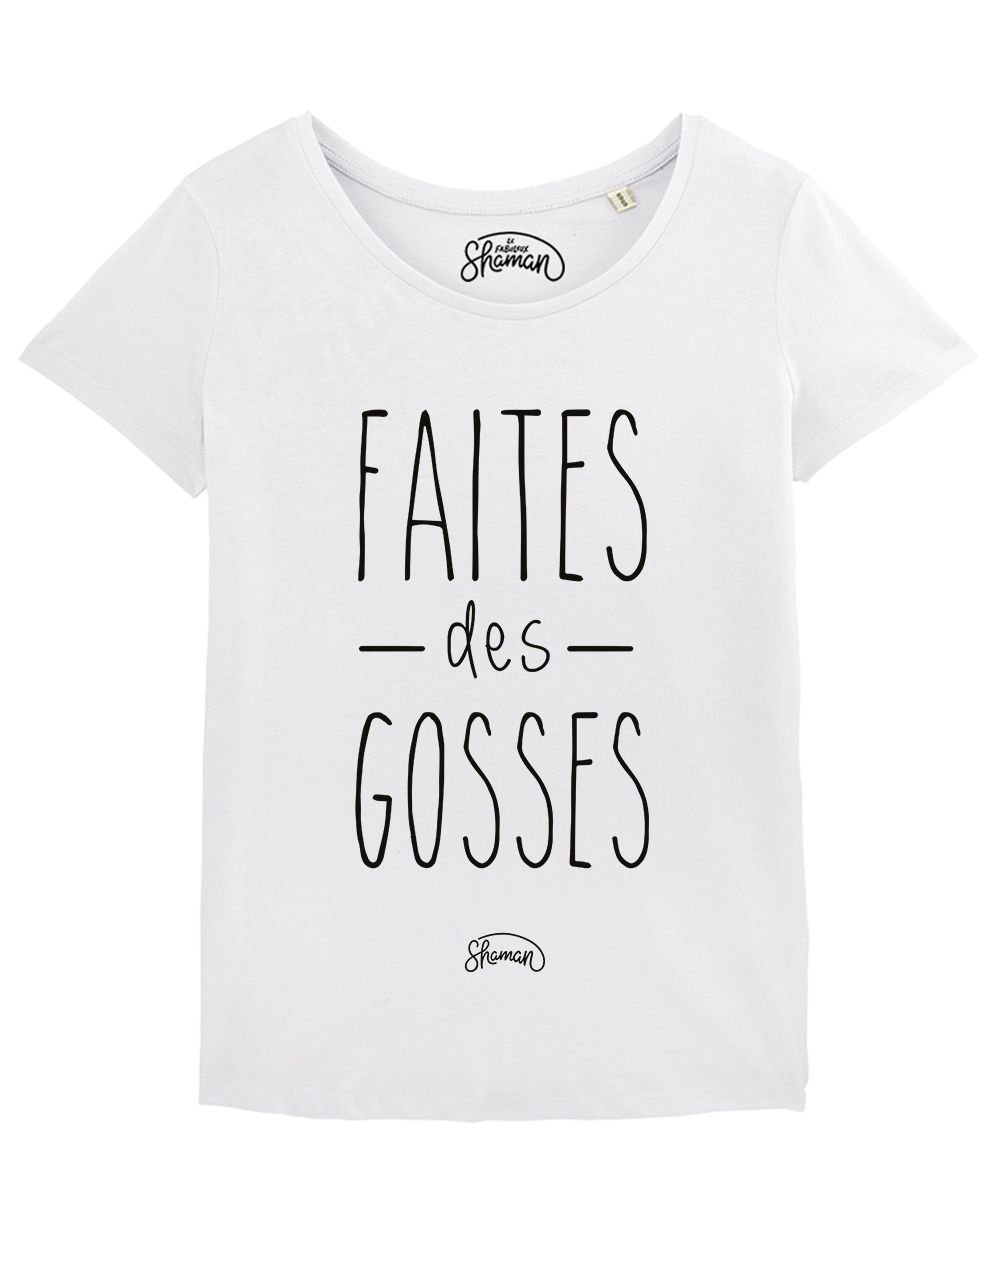 T-shirt "Faites des gosses"